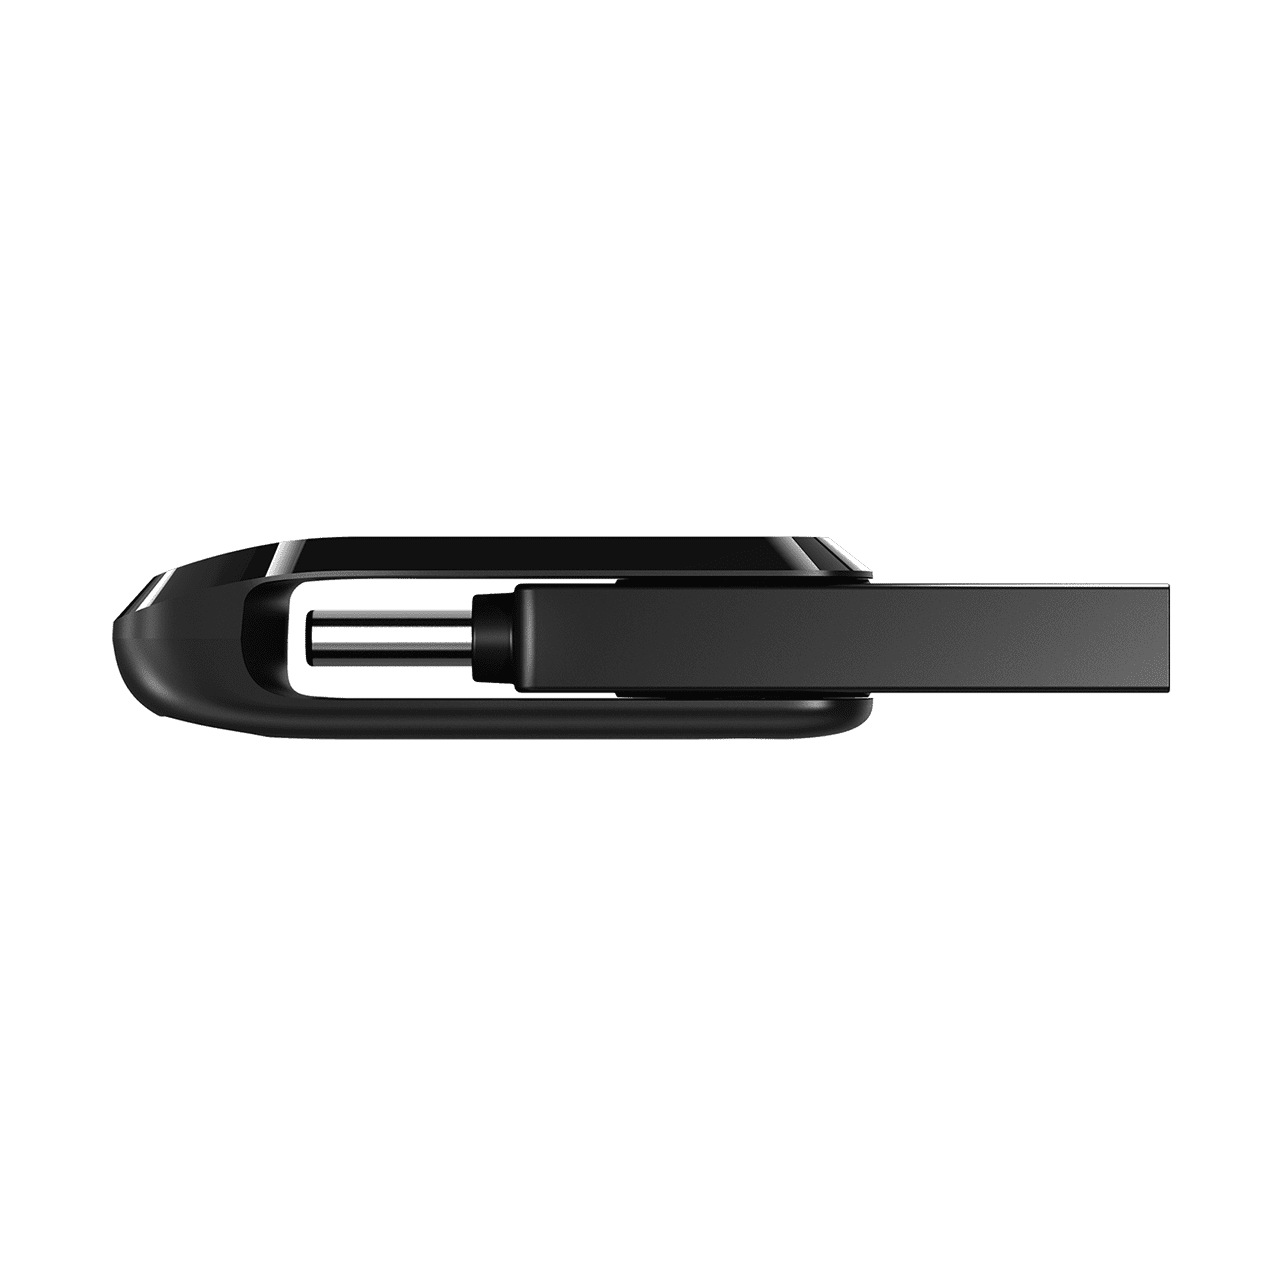 Obrázek SanDisk Ultra Dual Drive Go/128GB/150MBps/USB 3.1/USB-A + USB-C/Černá